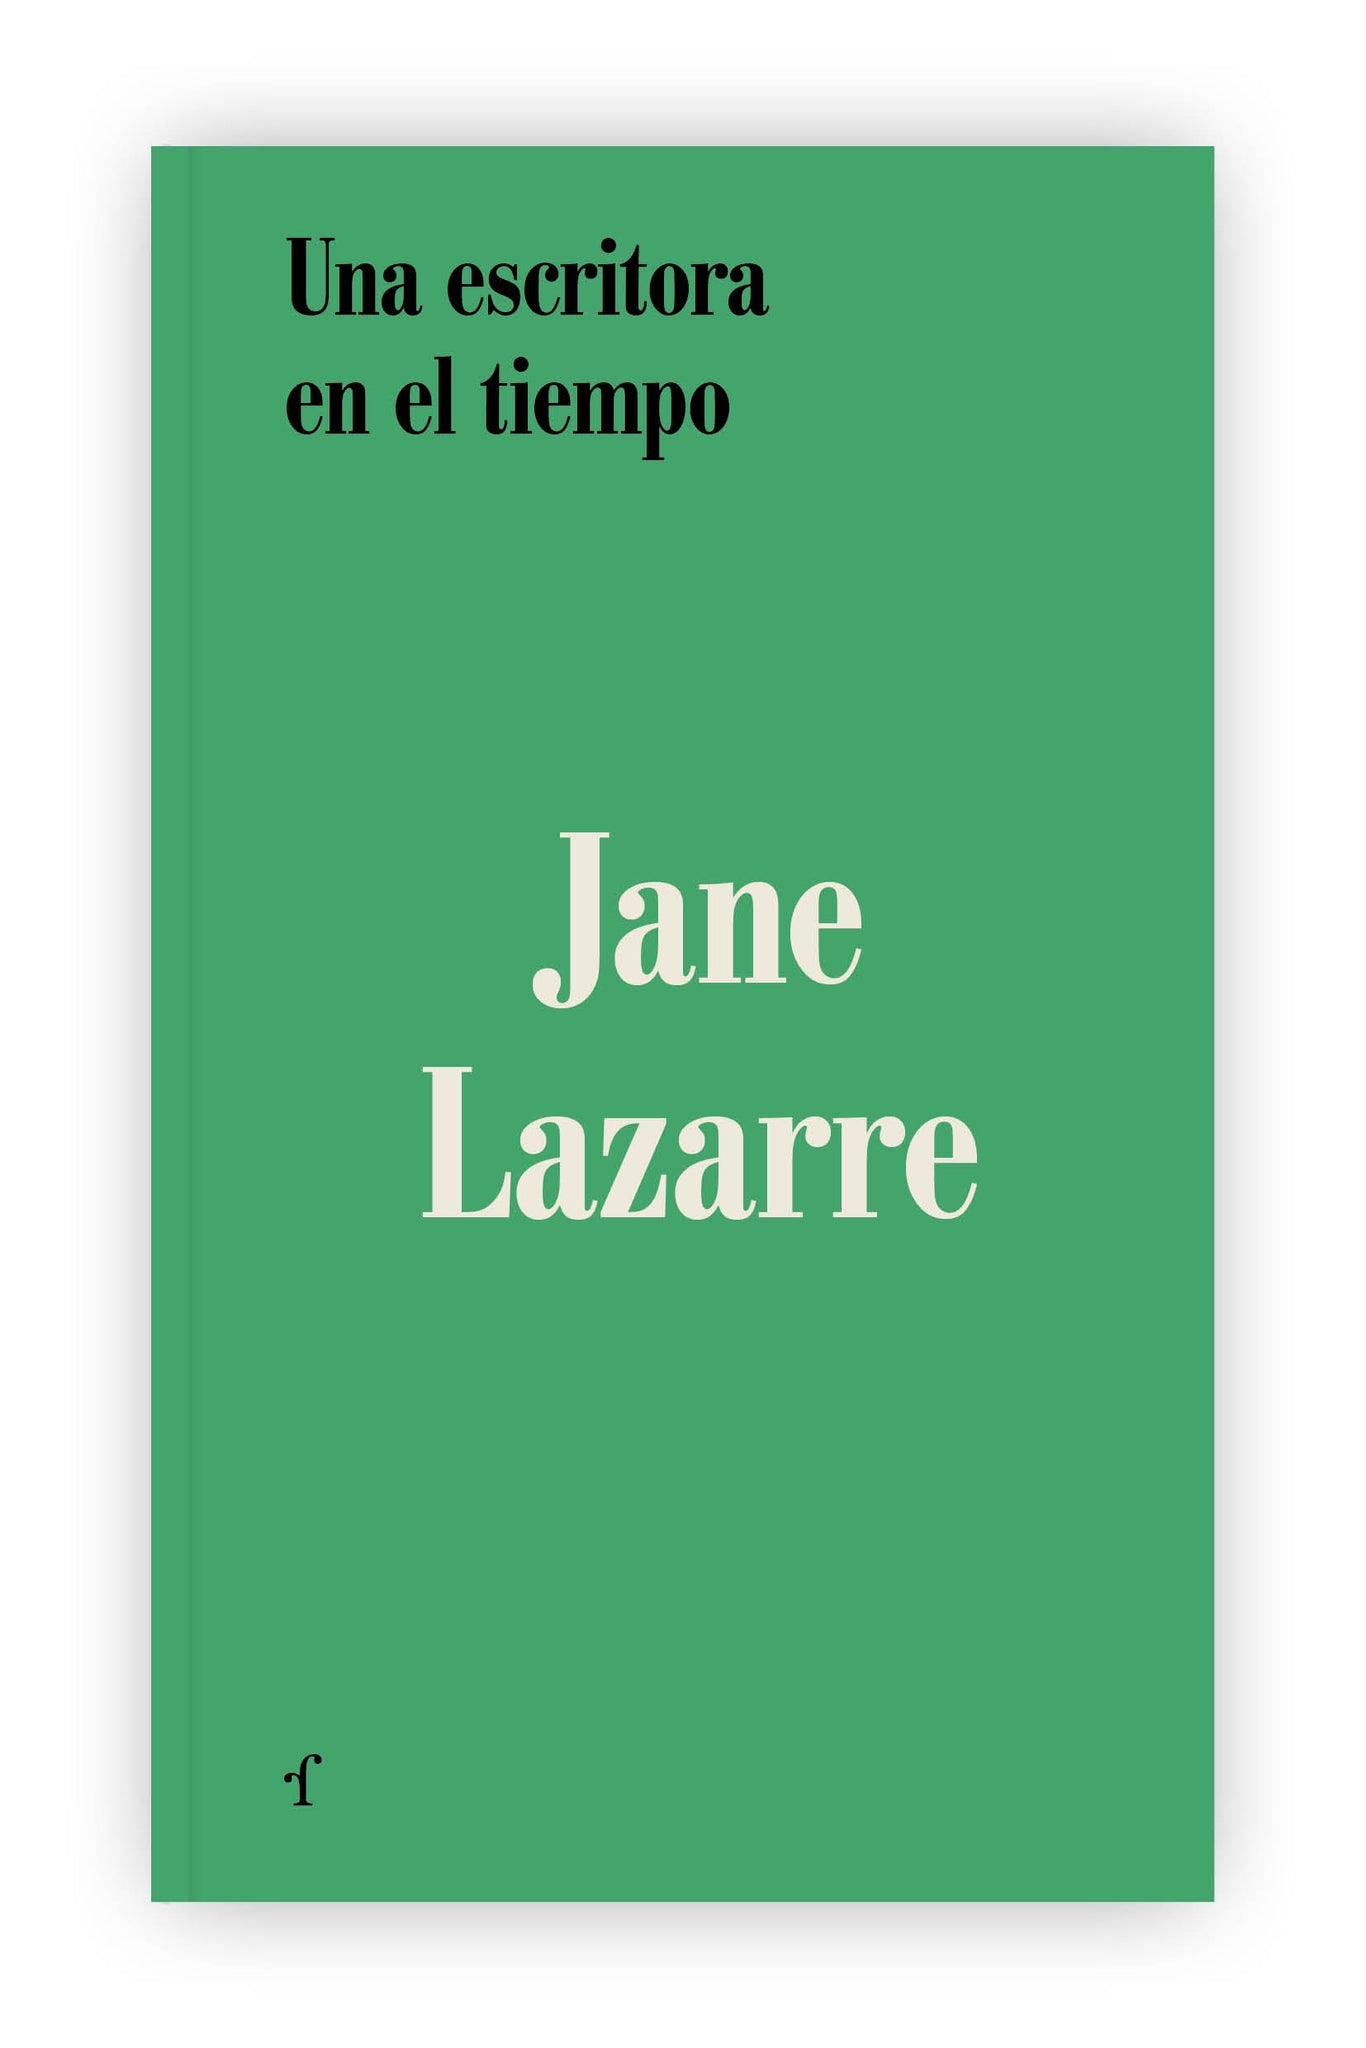 "Un escritora en el tiempo", de Jane Lazarre